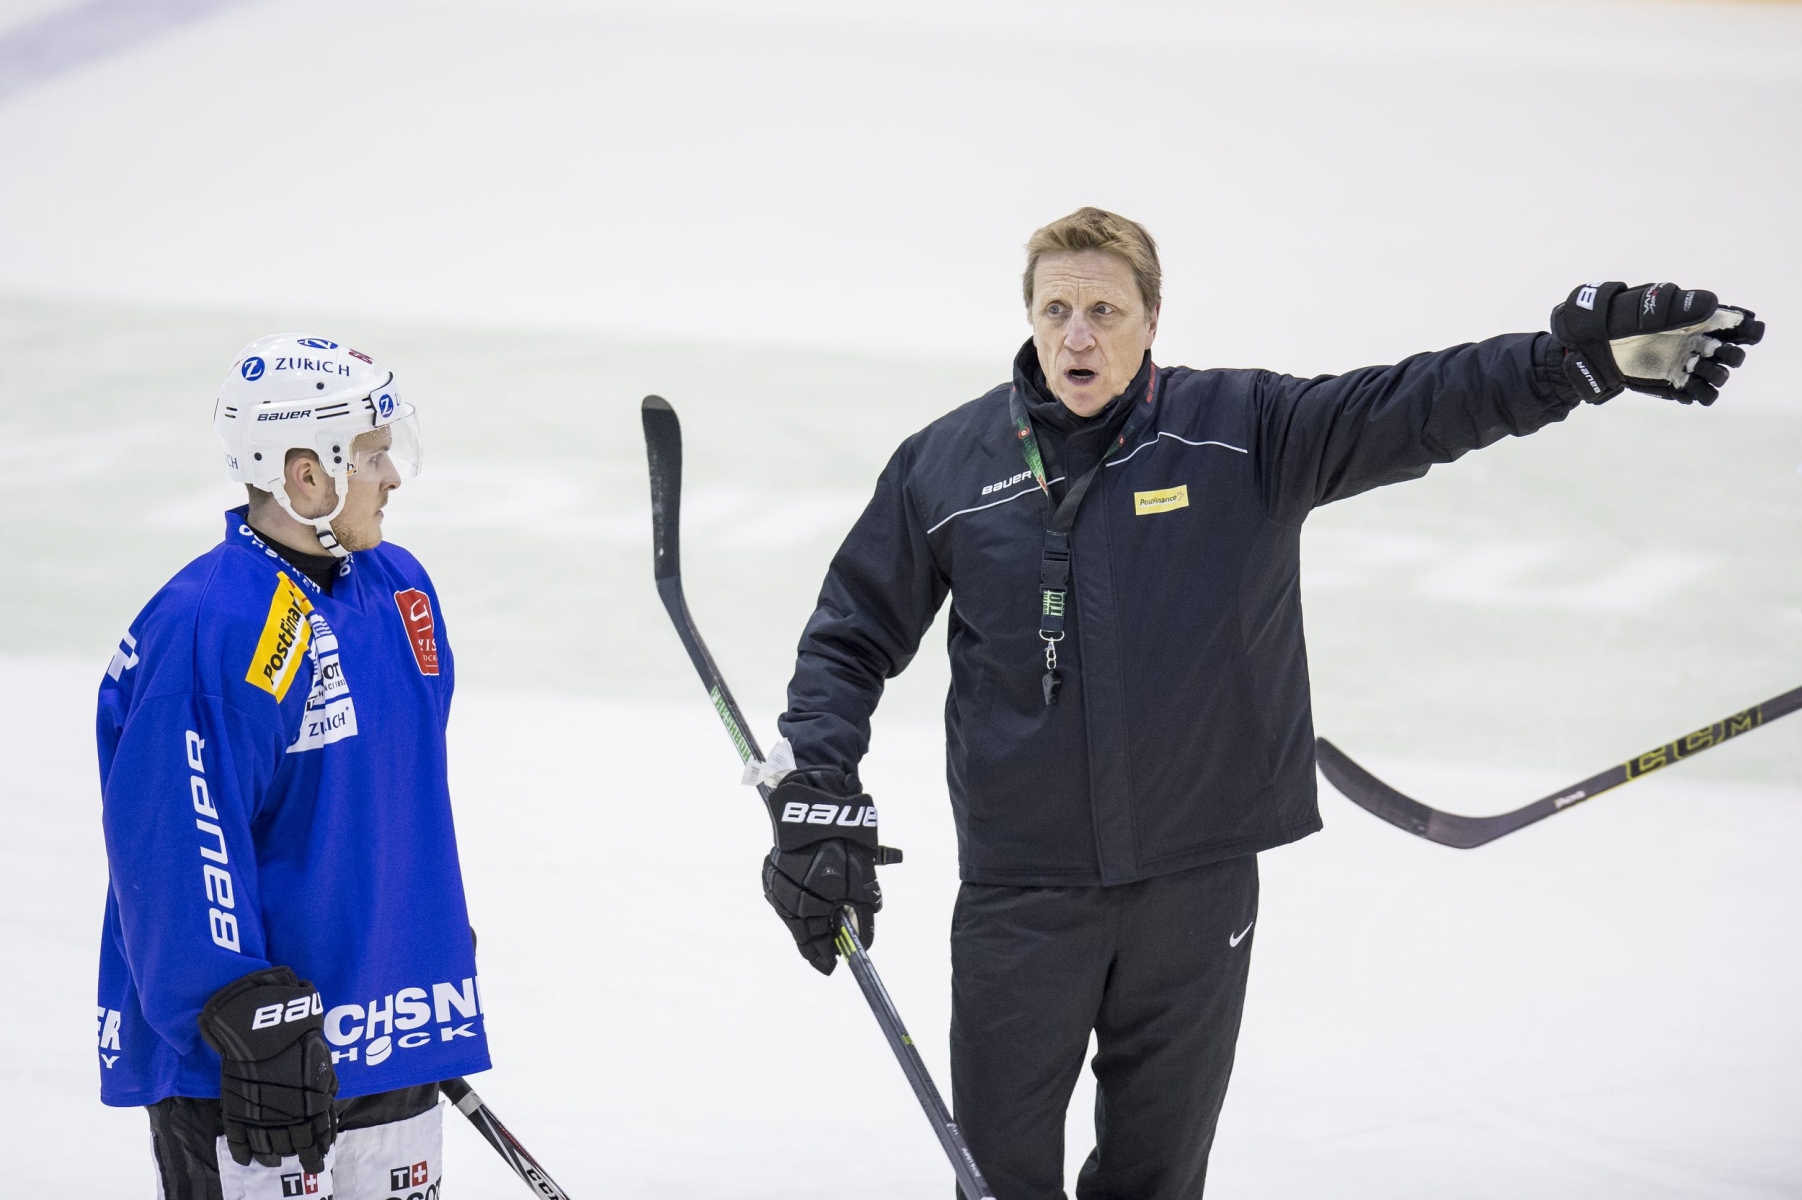 Entrainement de l'equipe suisse de hockey a la patinoire des melezes. 

A droite, le coach de l'equipe de suisse Glen Hanlon

La Chaux-de-Fonds, le 06.04.2015

Photo : Lucas Vuitel